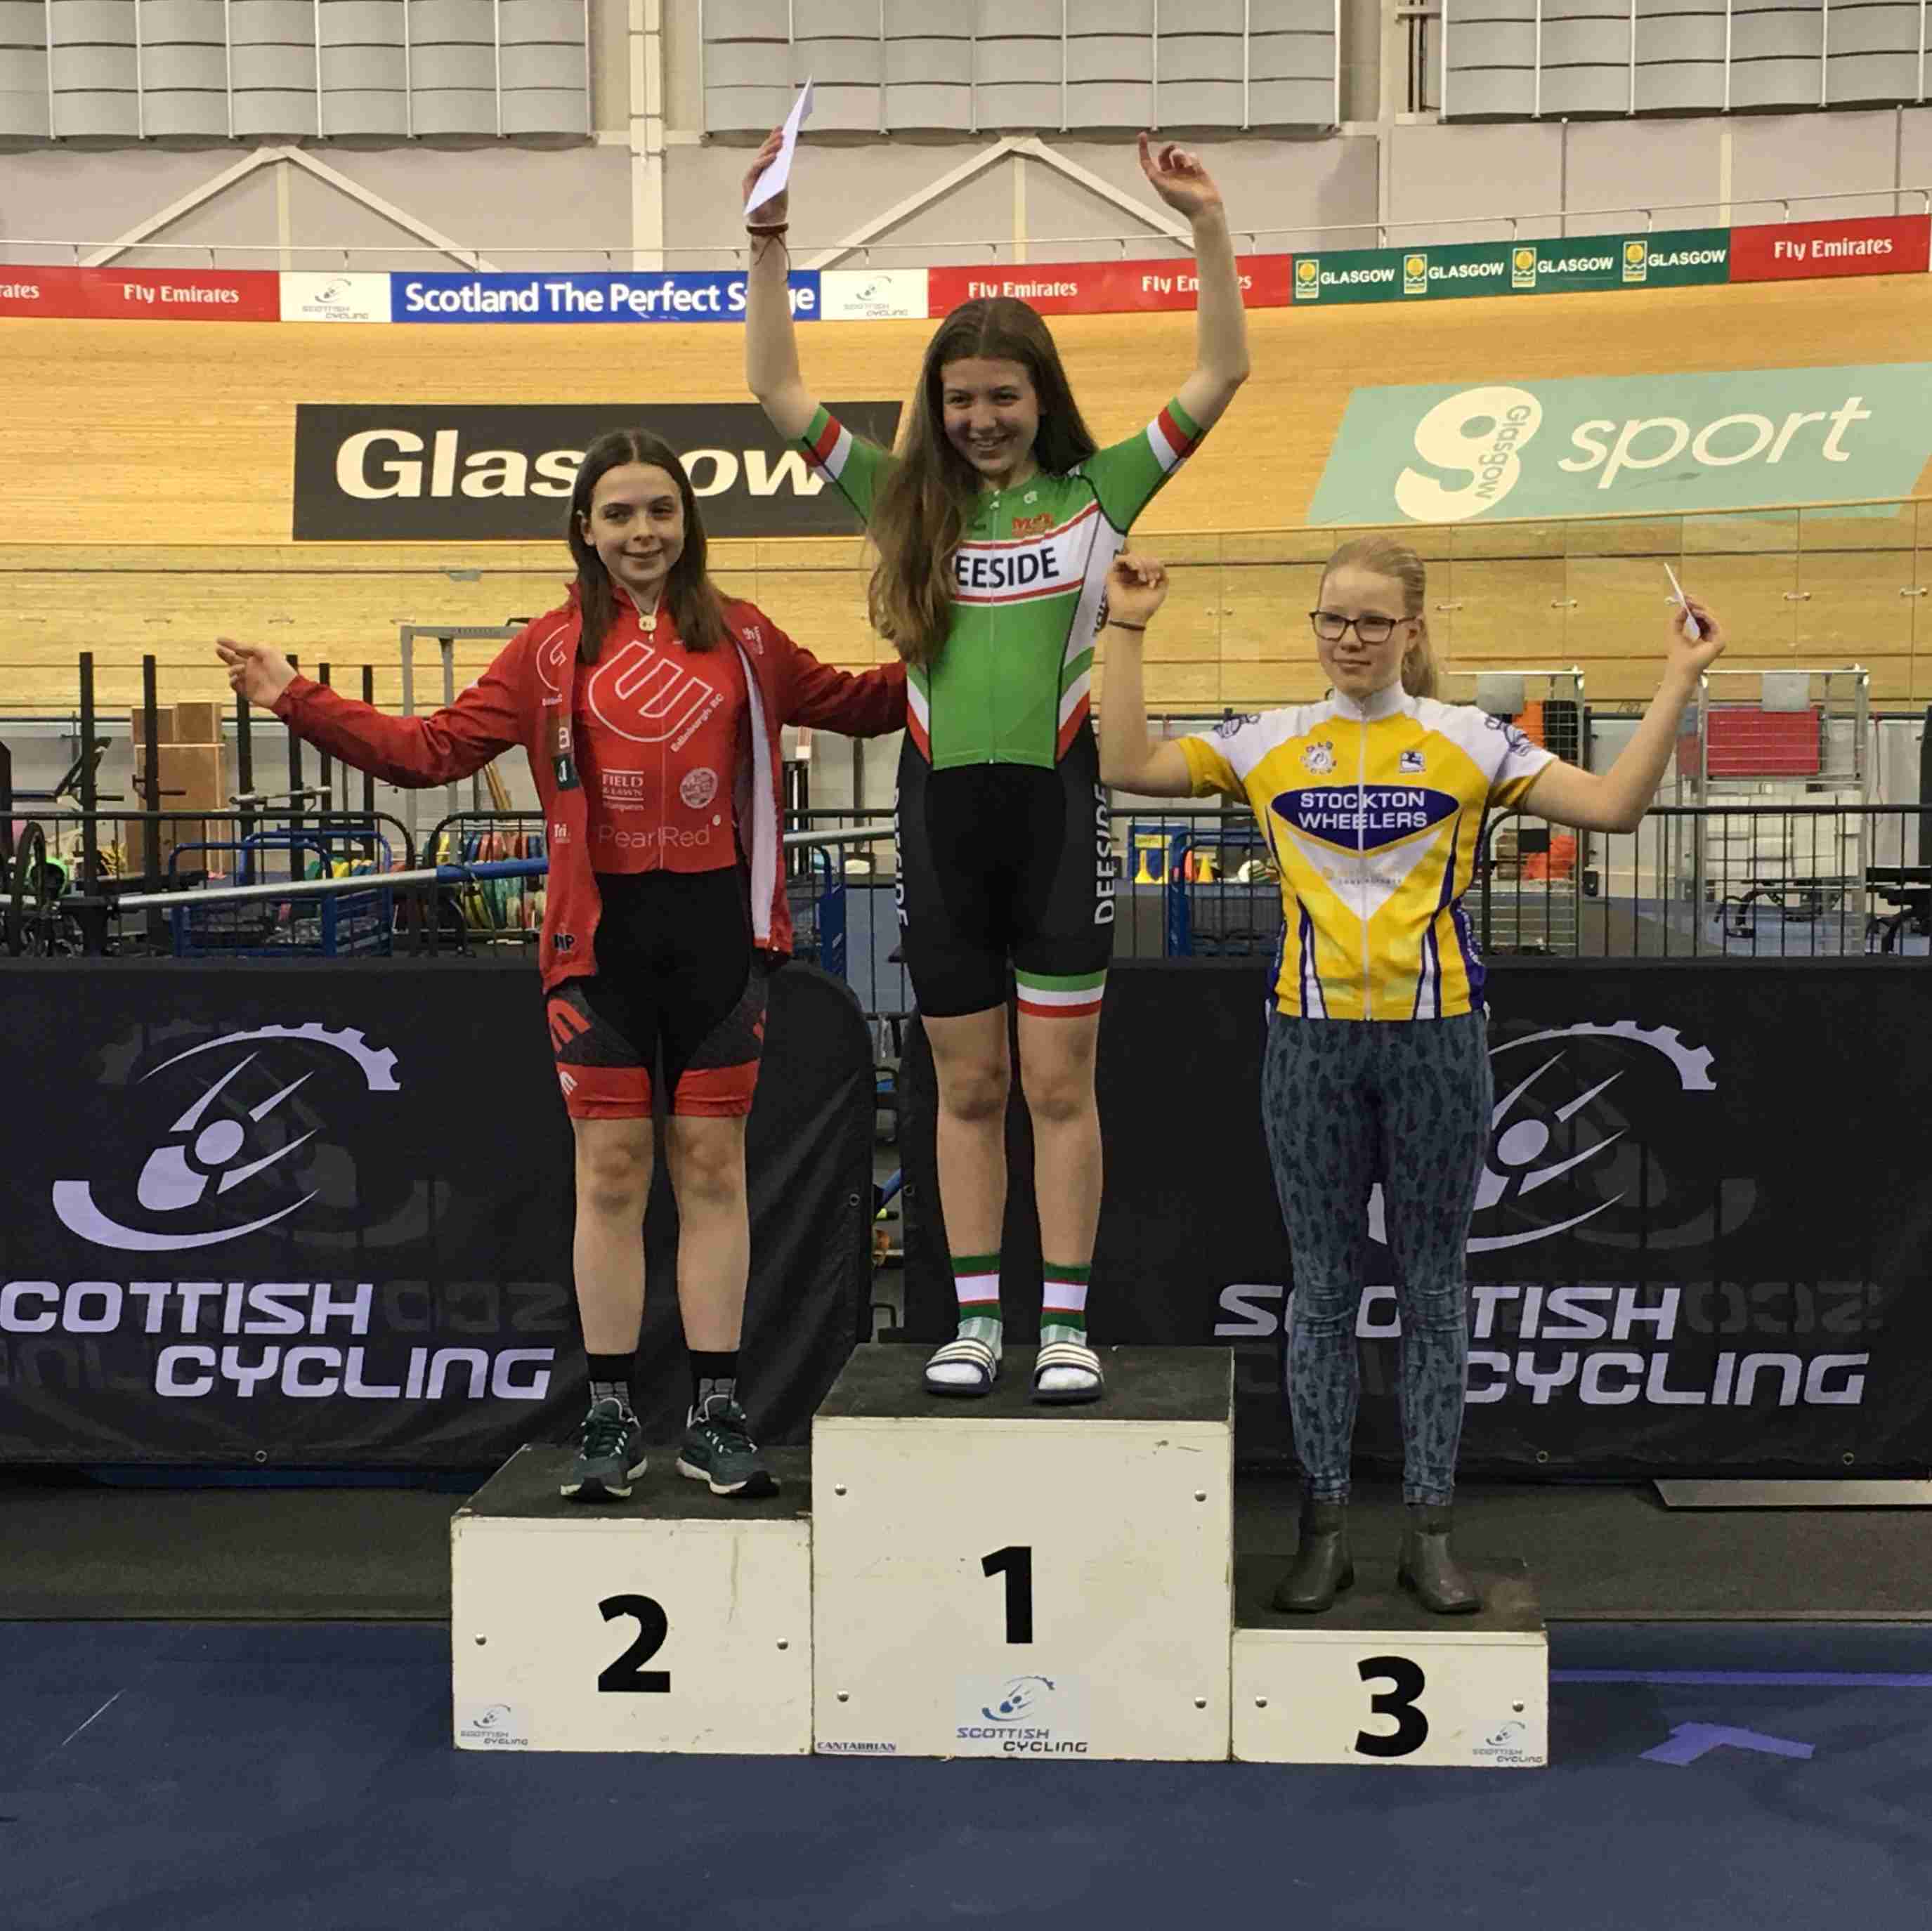 2019 Scottish Cycling omnium podium